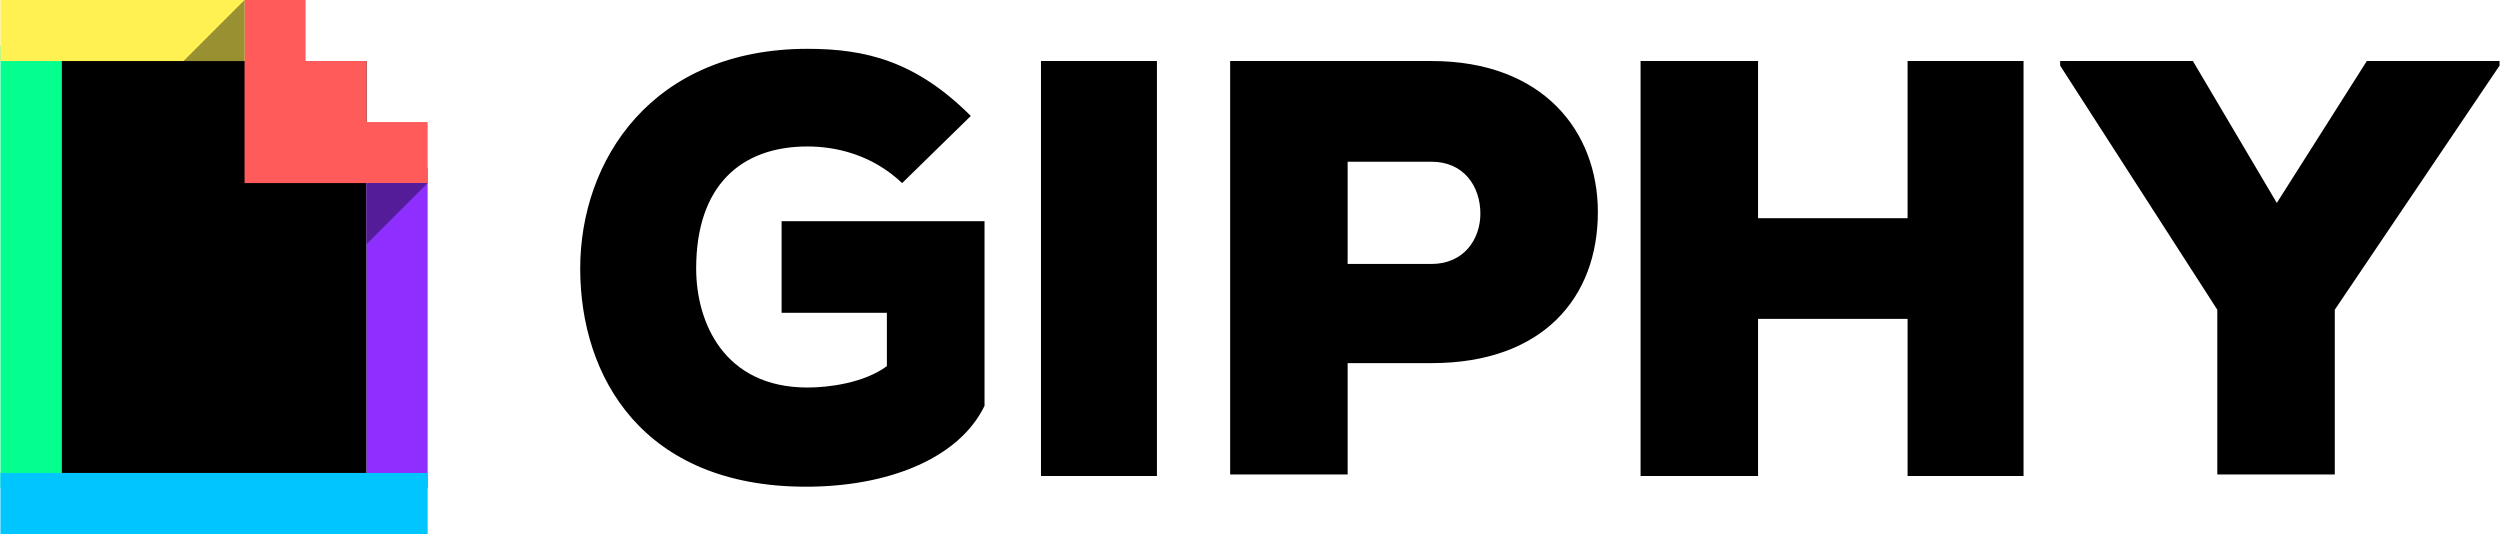 Giphy logo - black color